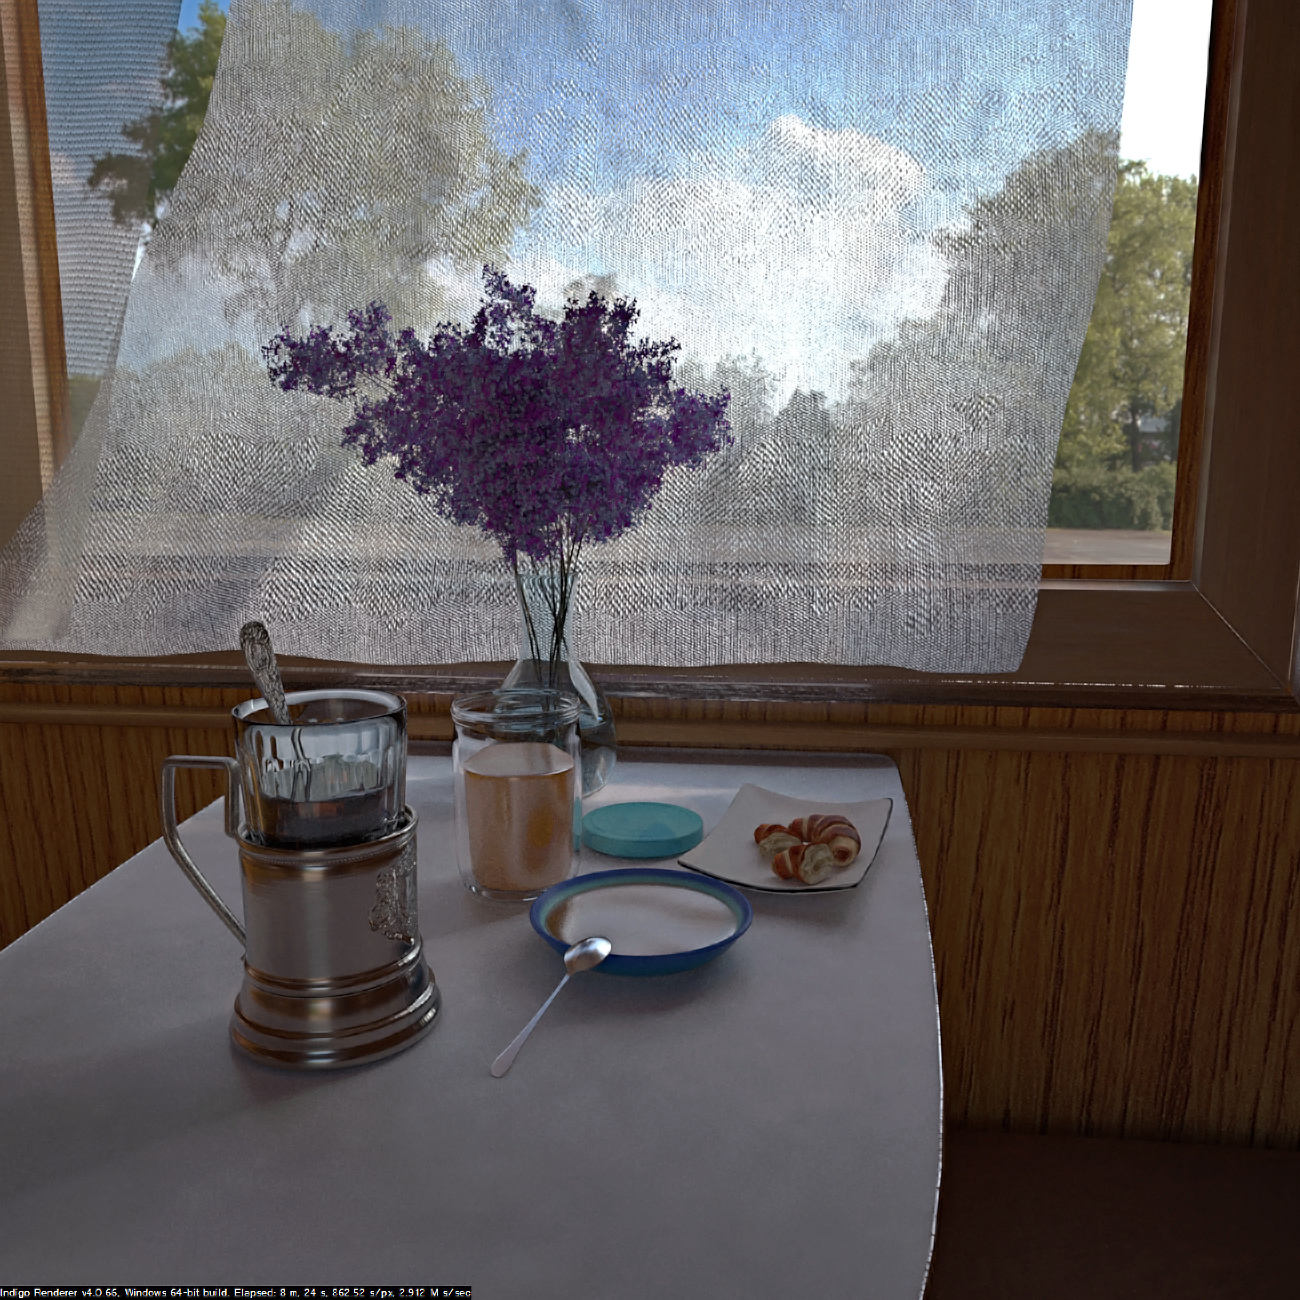 В купе (легкий сніданок ... або вечерю) в Cinema 4d indigo renderer зображення